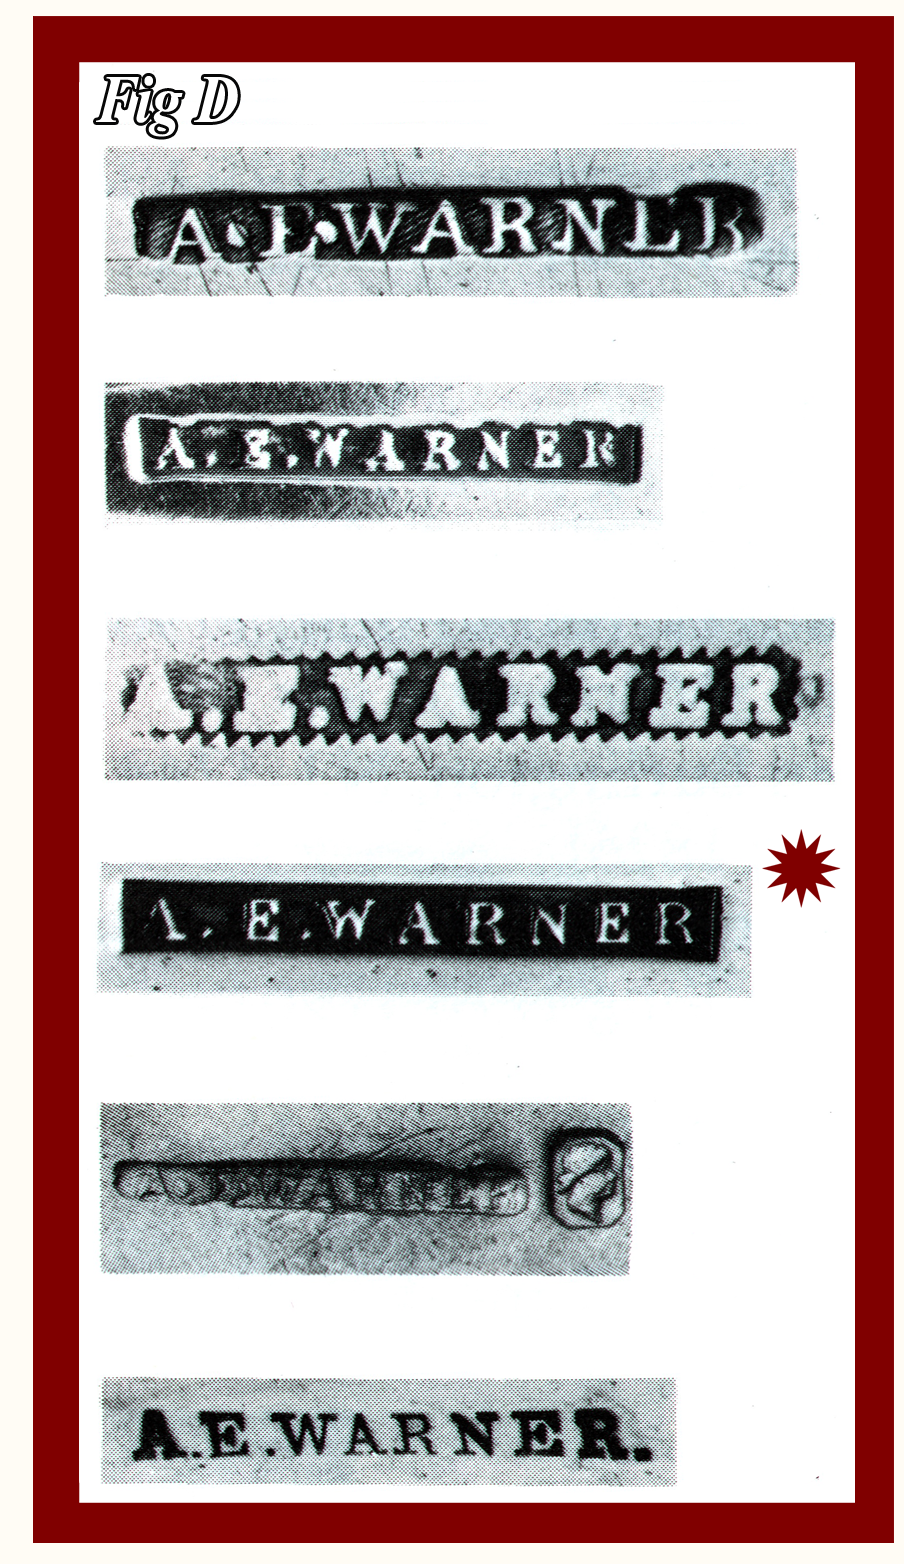 Five varied A. E. Warner maker's marks